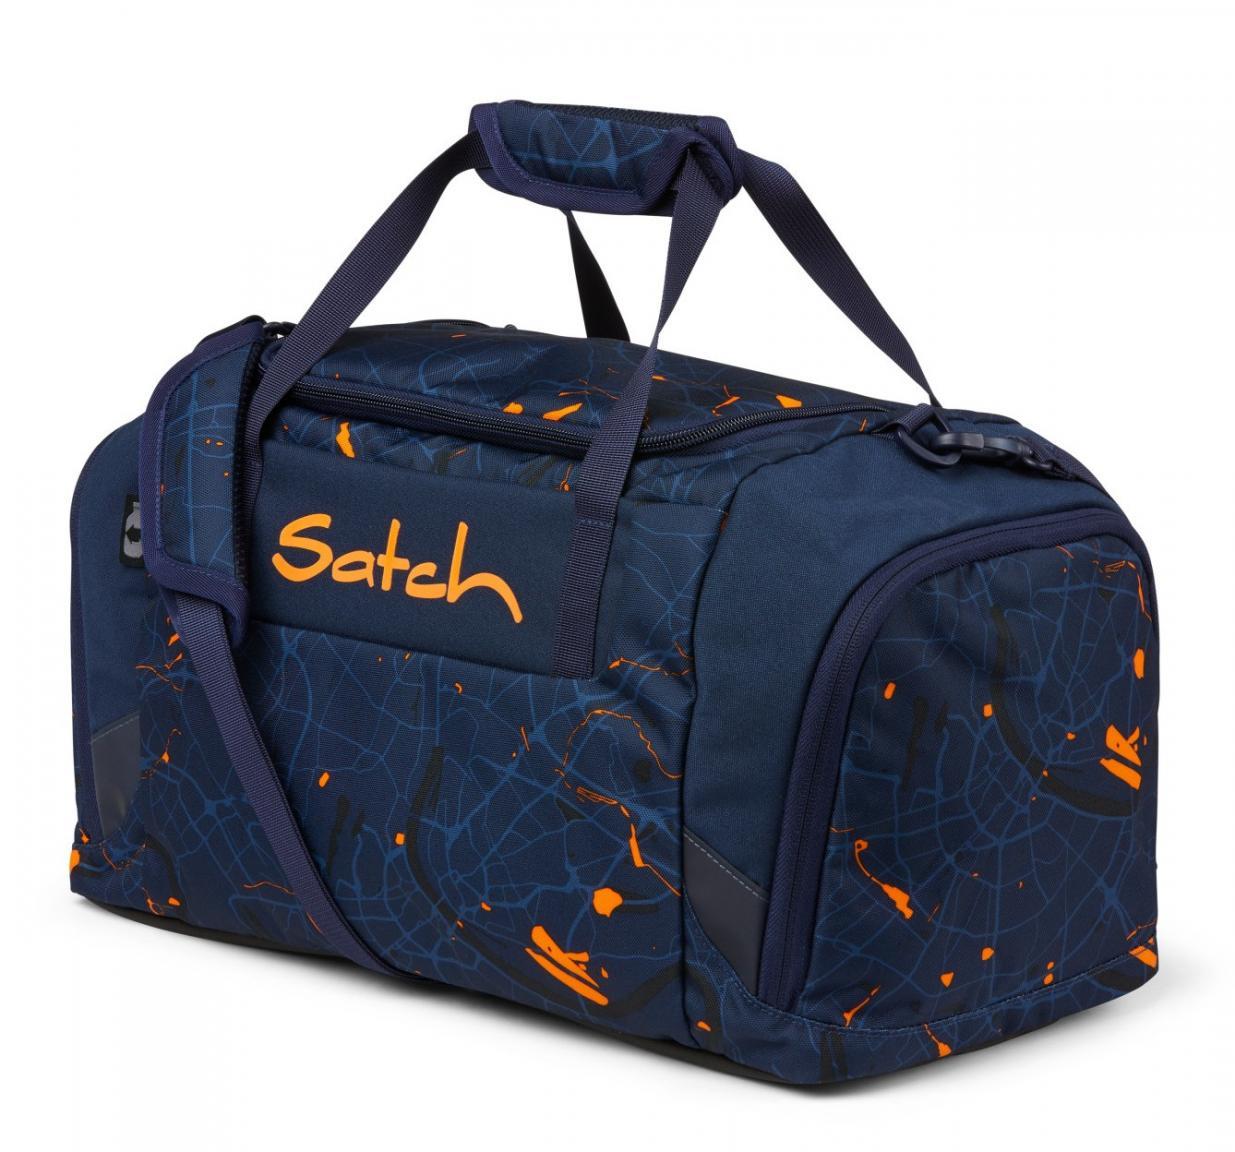 satch Sportbag Sporttasche Tasche Urban Journey Blau Orange Neu 